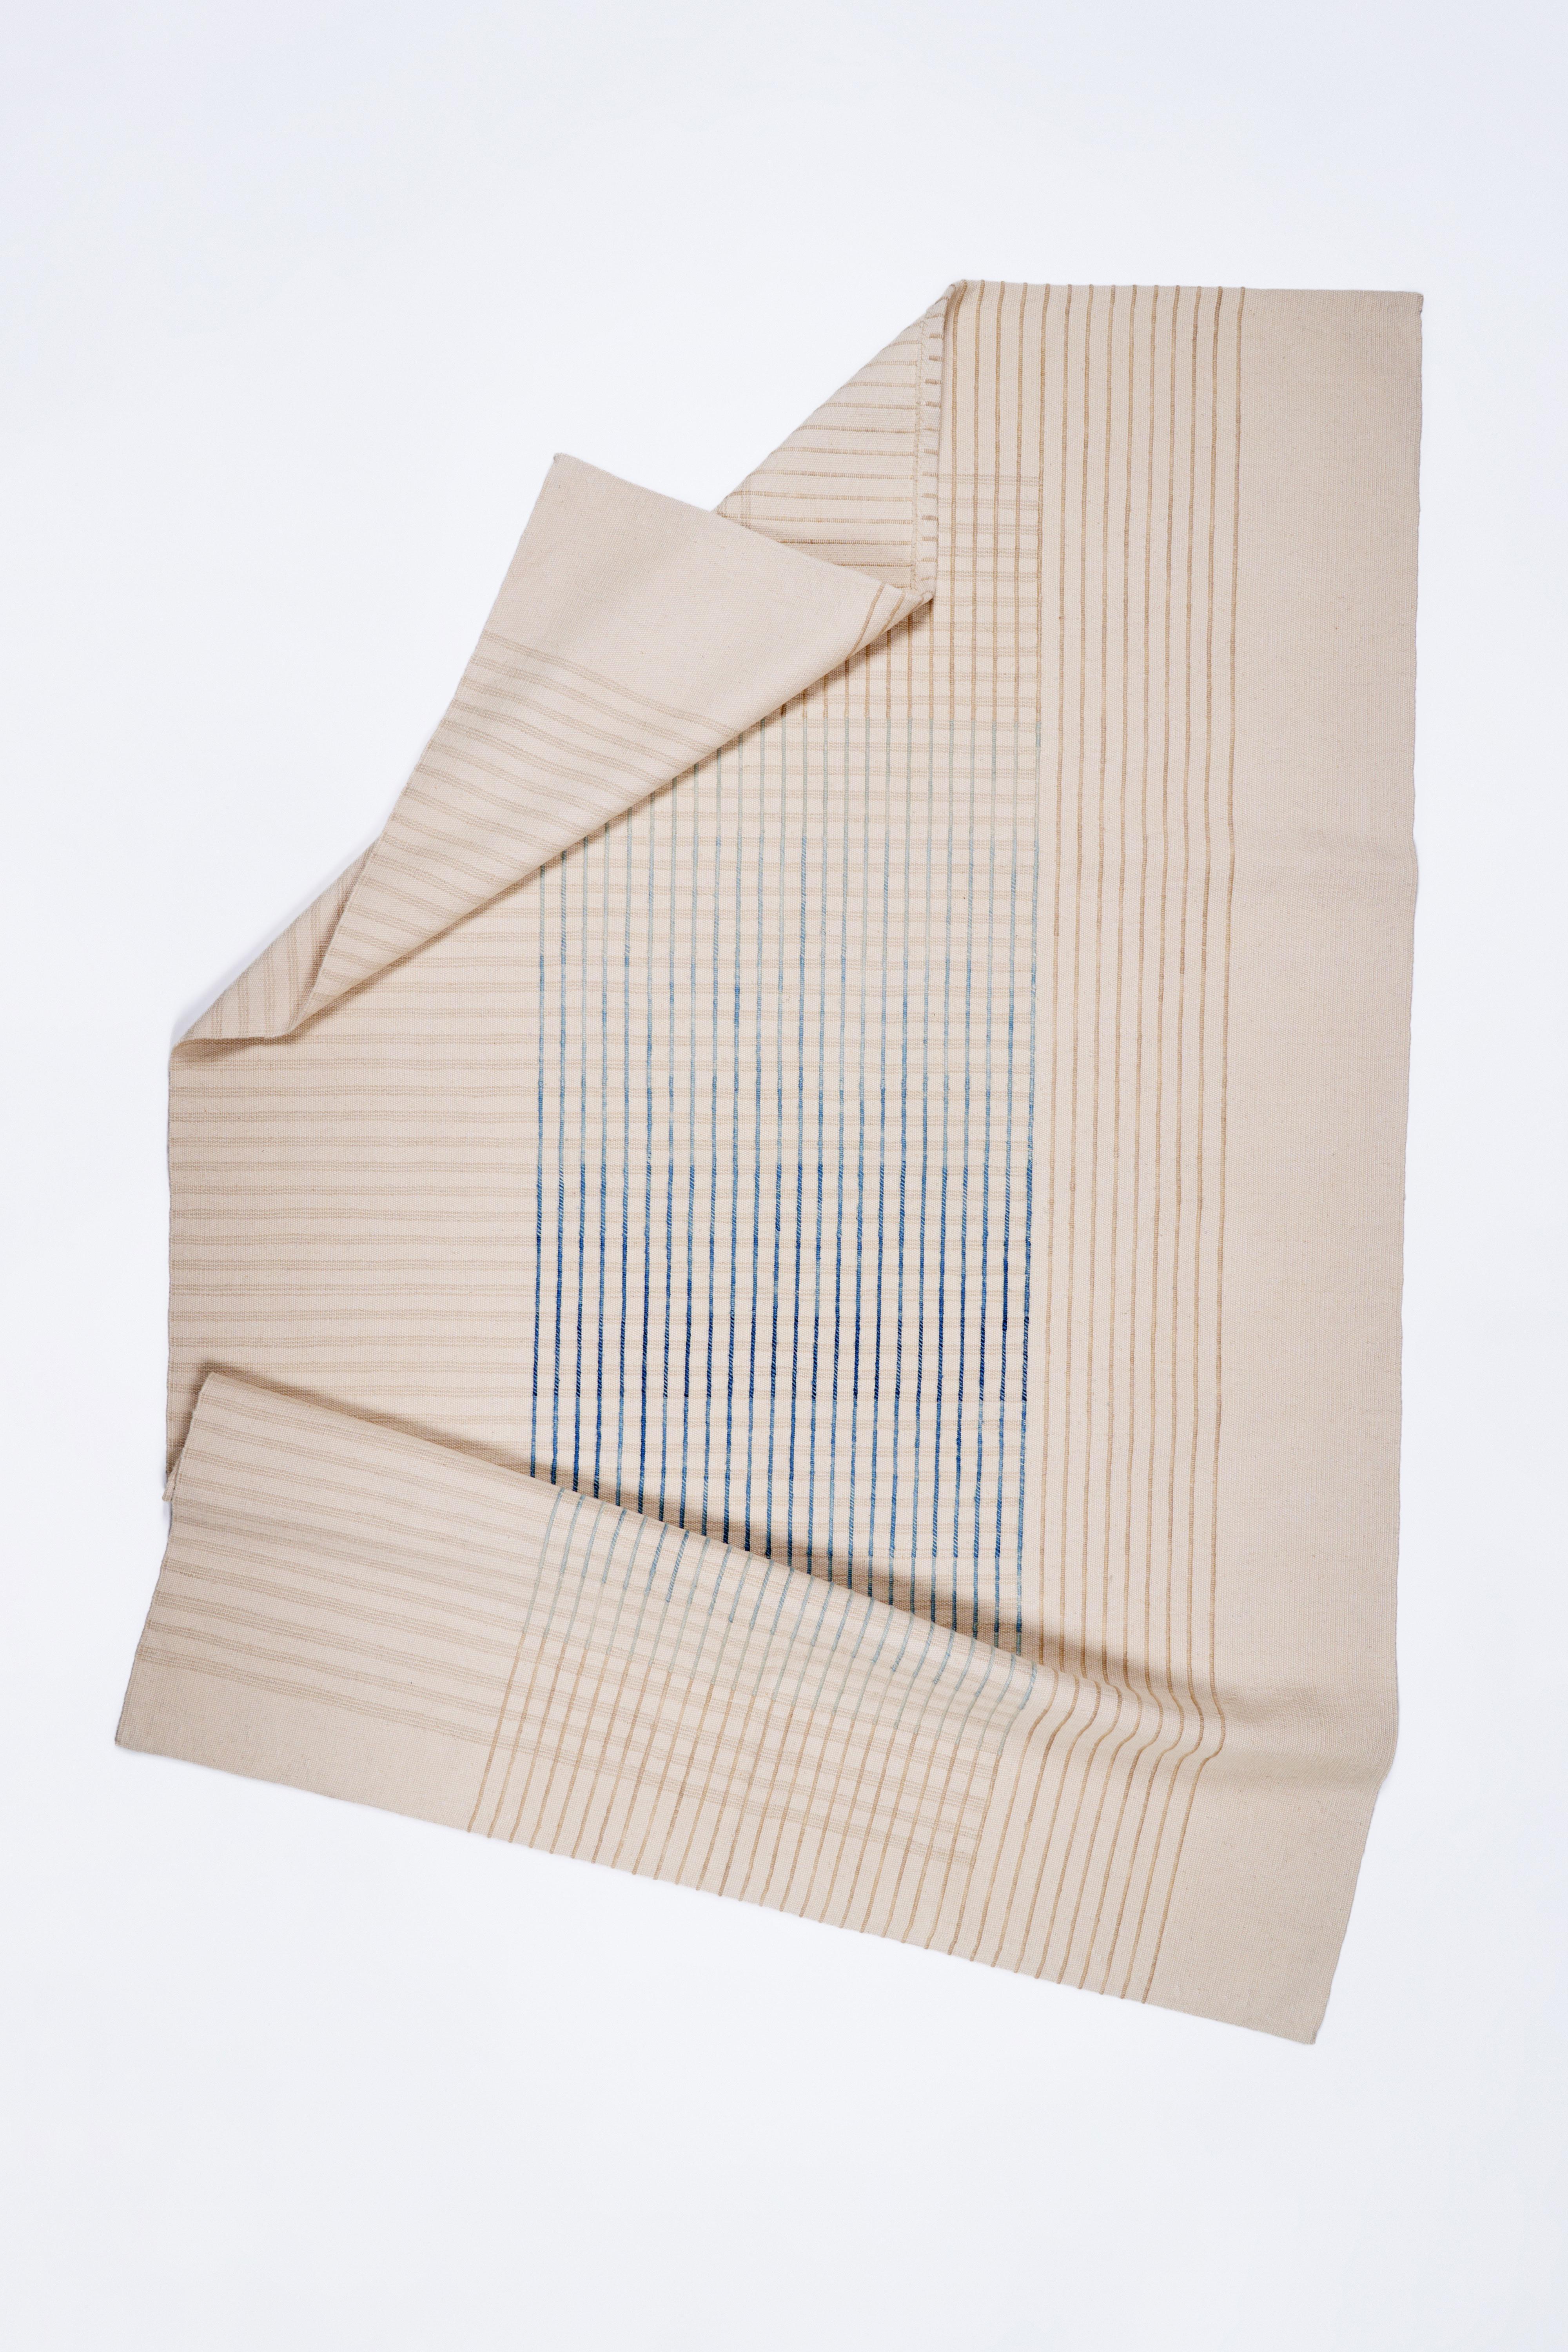 Inspiriert von den zarten Linien von Agnes Martin und der japanischen Philosophie von Ma, vermittelt die zeitgenössische handgewebte Teppichkollektion AGNES ein Gefühl von Schlichtheit und Eleganz. Sein minimalistisches Design lädt zur Kontemplation